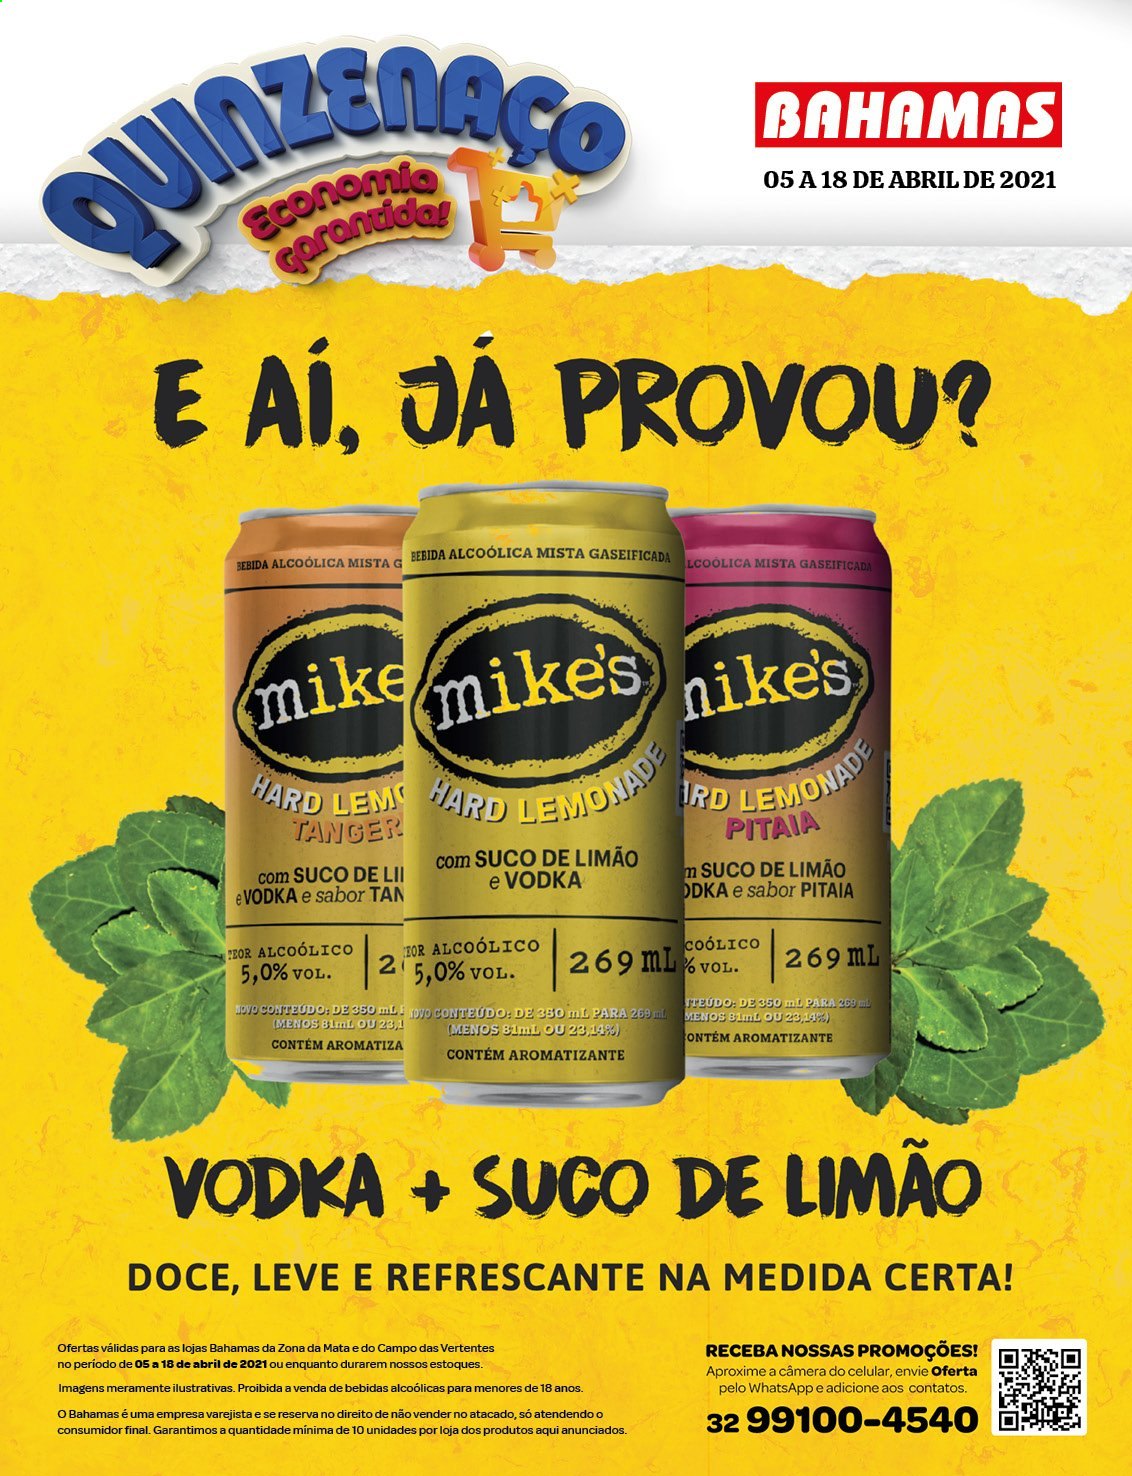 thumbnail - Folheto Bahamas Supermercados - 05/04/2021 - 18/04/2021 - Produtos em promoção - suco, vodka. Página 1.